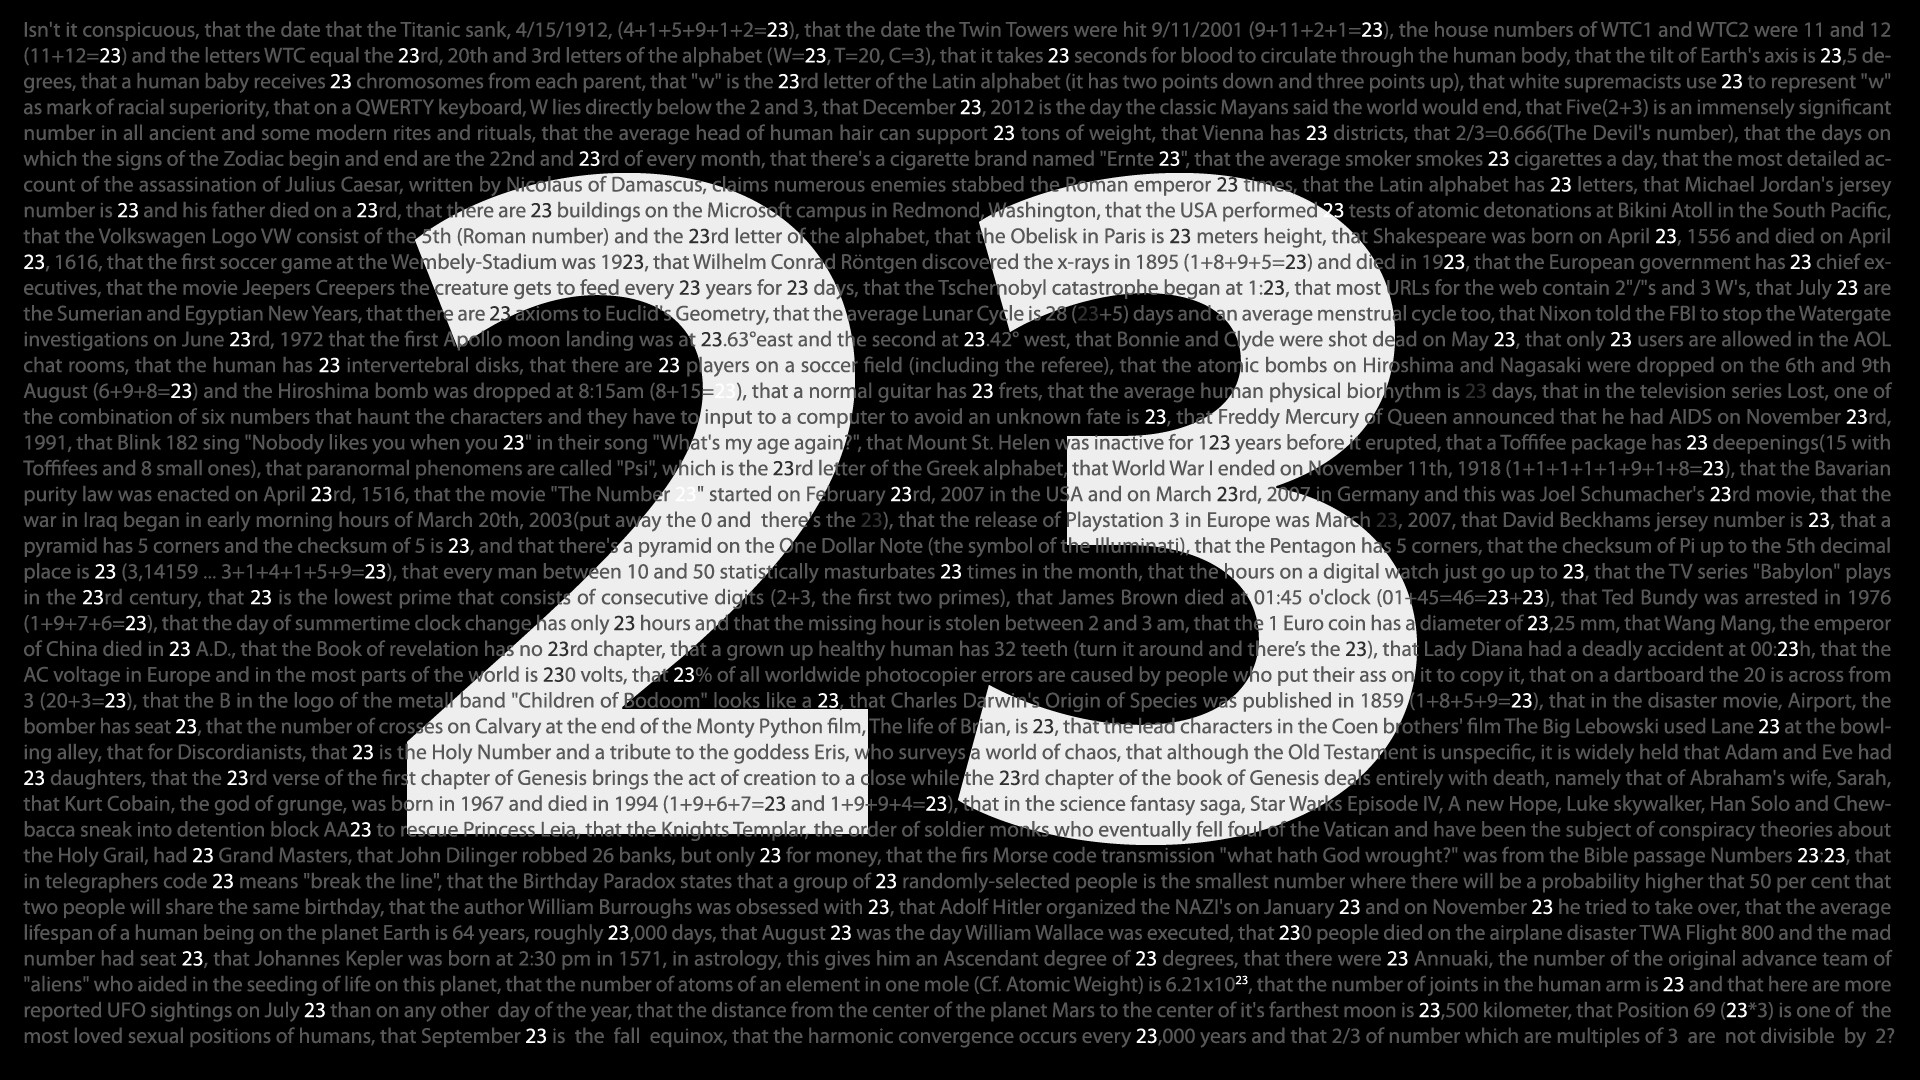 23 fond d'écran,texte,police de caractère,nombre,symbole,noir et blanc